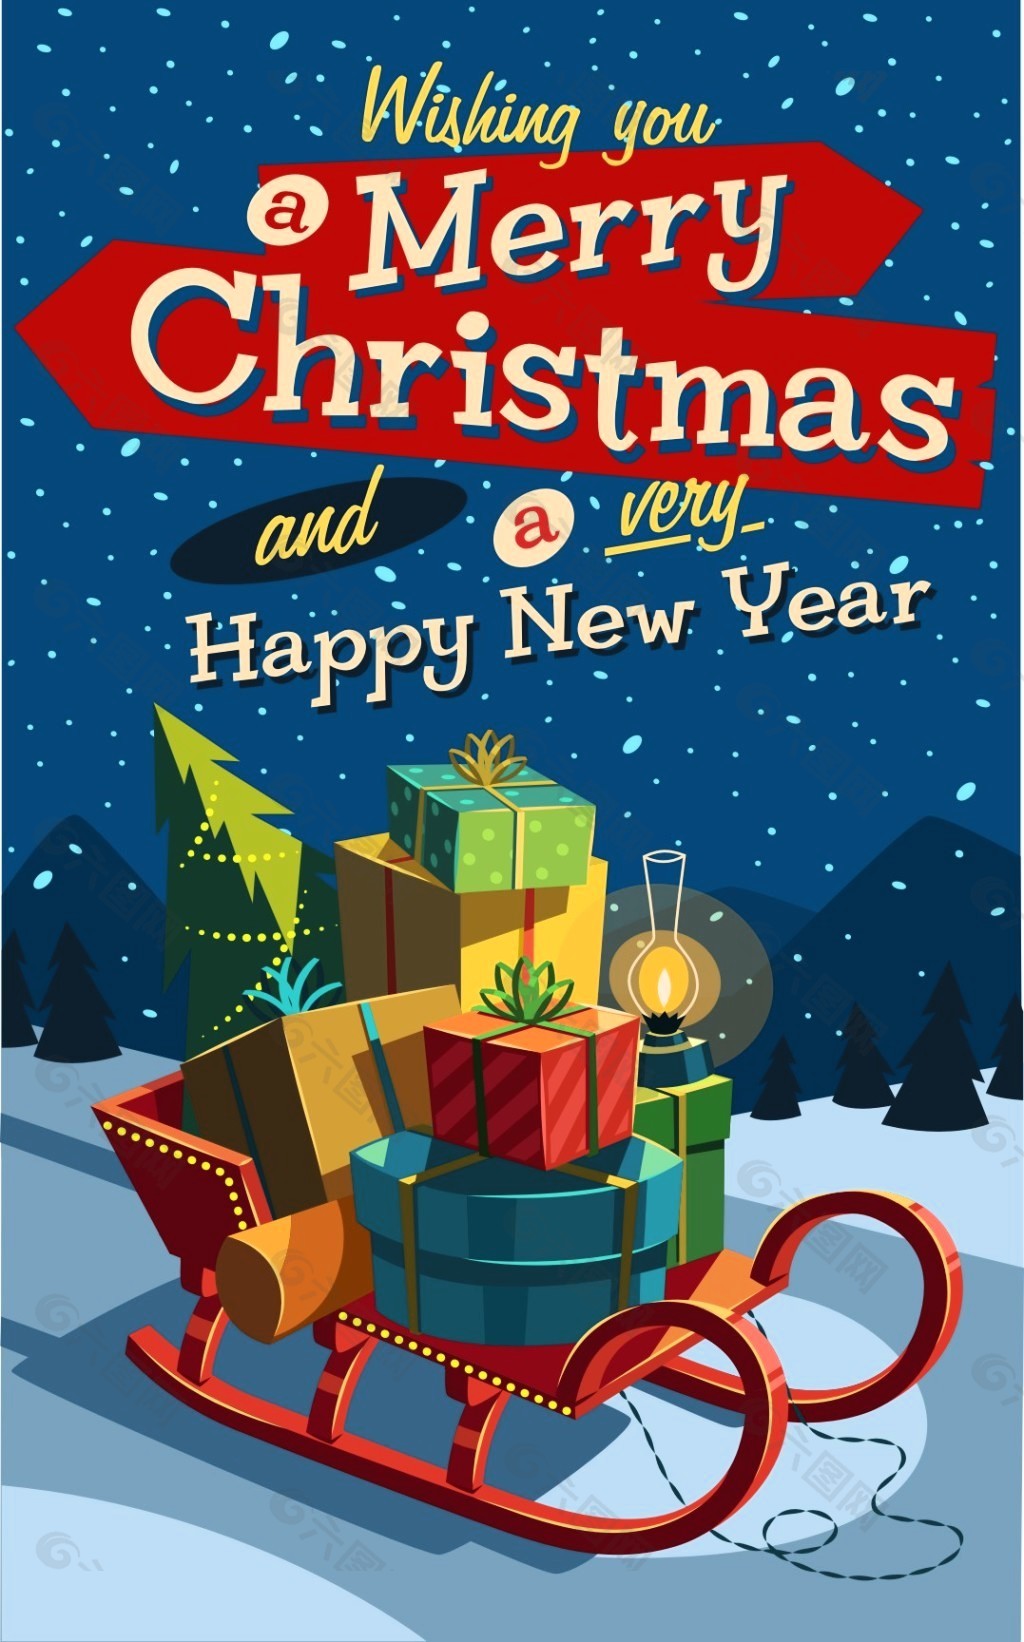 精美圣诞海报矢量素材平面广告素材免费下载(图片编号:6172957)